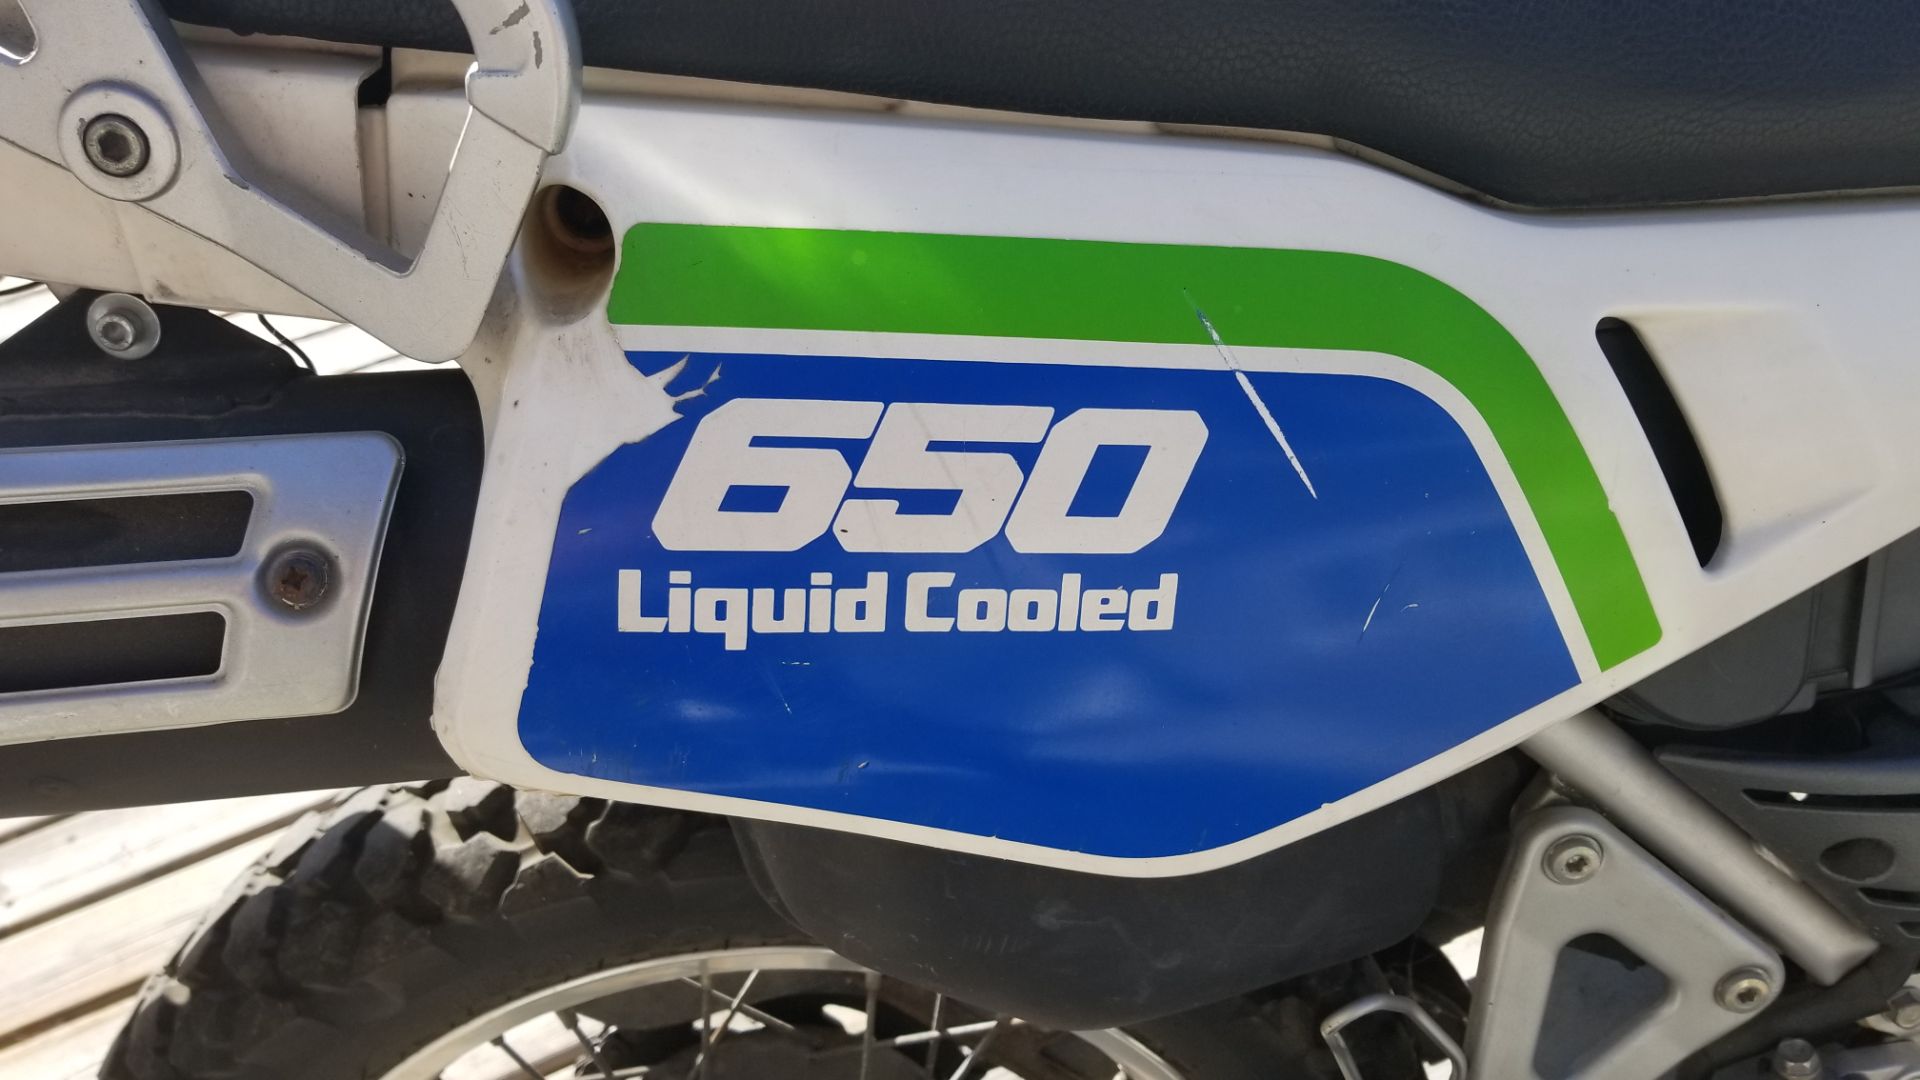 650 liquid cool